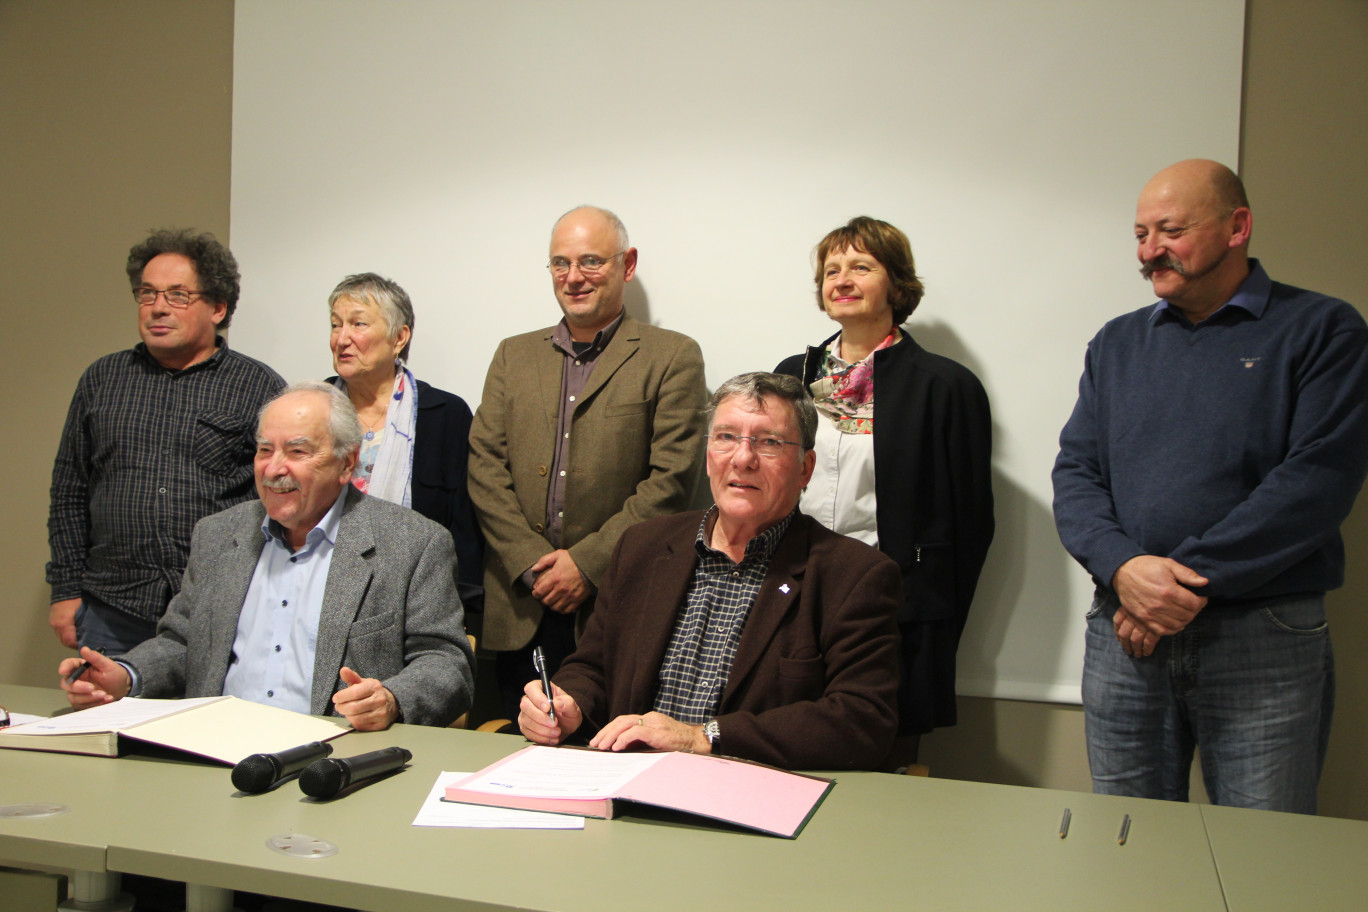 Crédit : Benoit Delabre pour Aletheia Press,
Jean-Claude Weiss (à g.) et Dominique Frébourg (à dr.) ont signé cette convention à la Maison des Compétences. 
